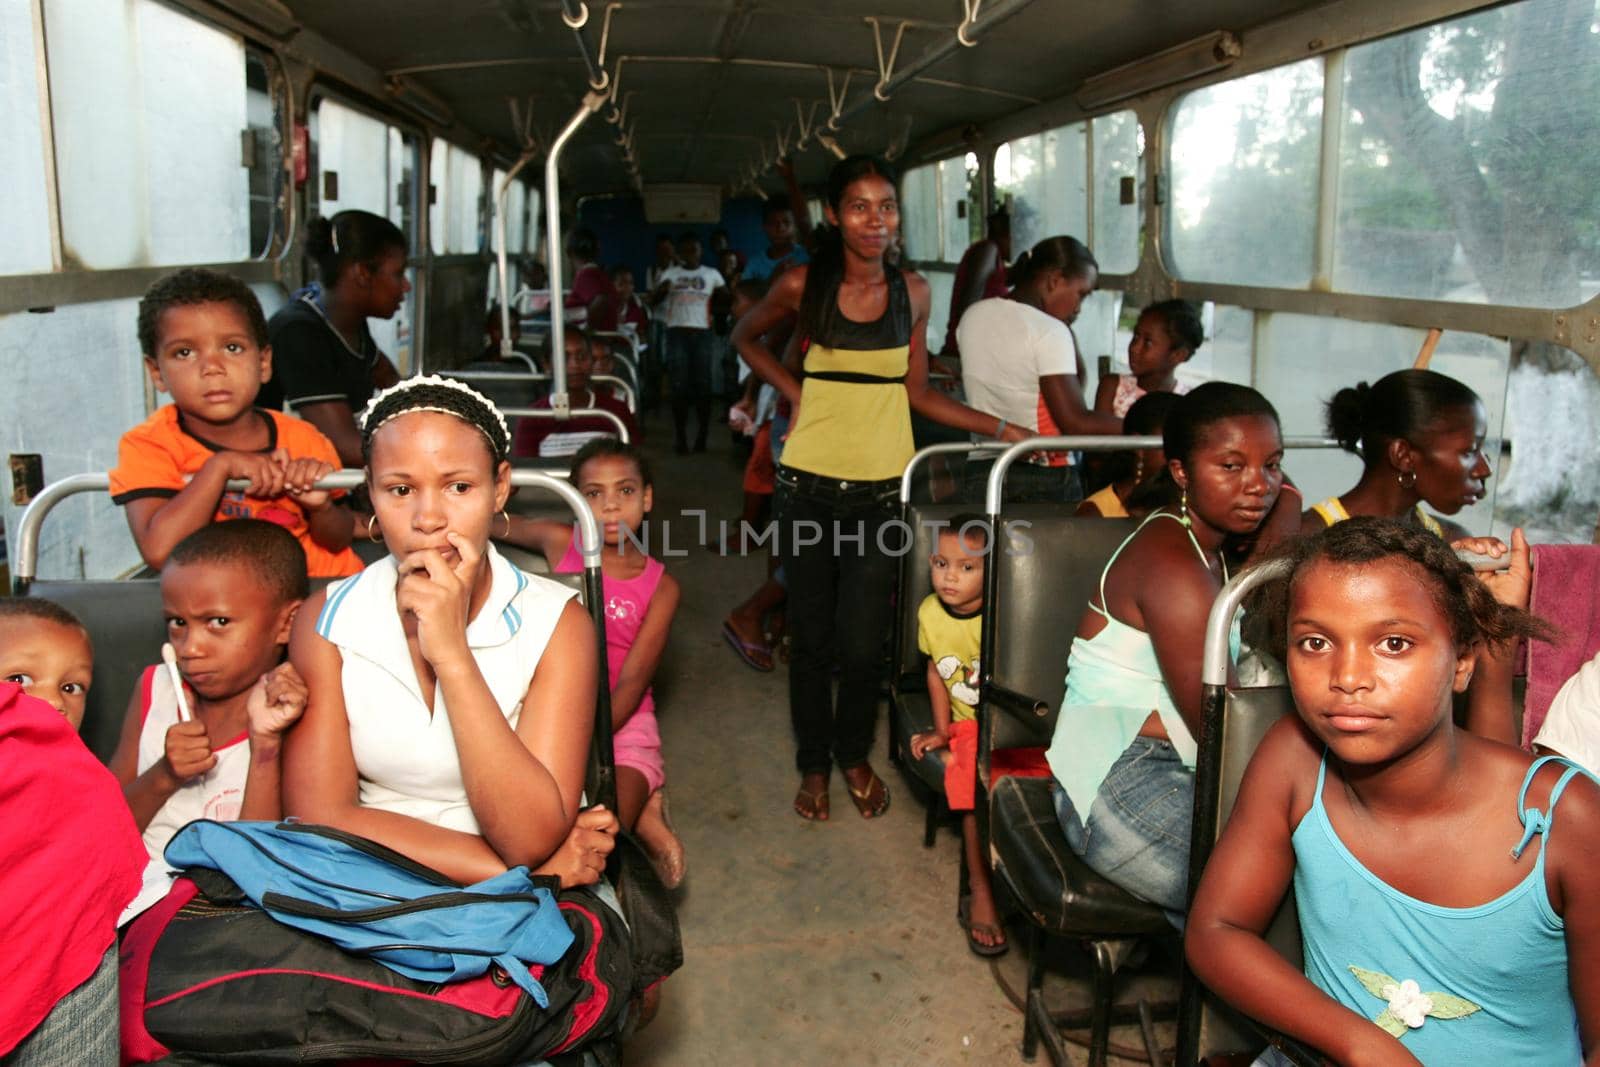 quilombola children in school transport by joasouza